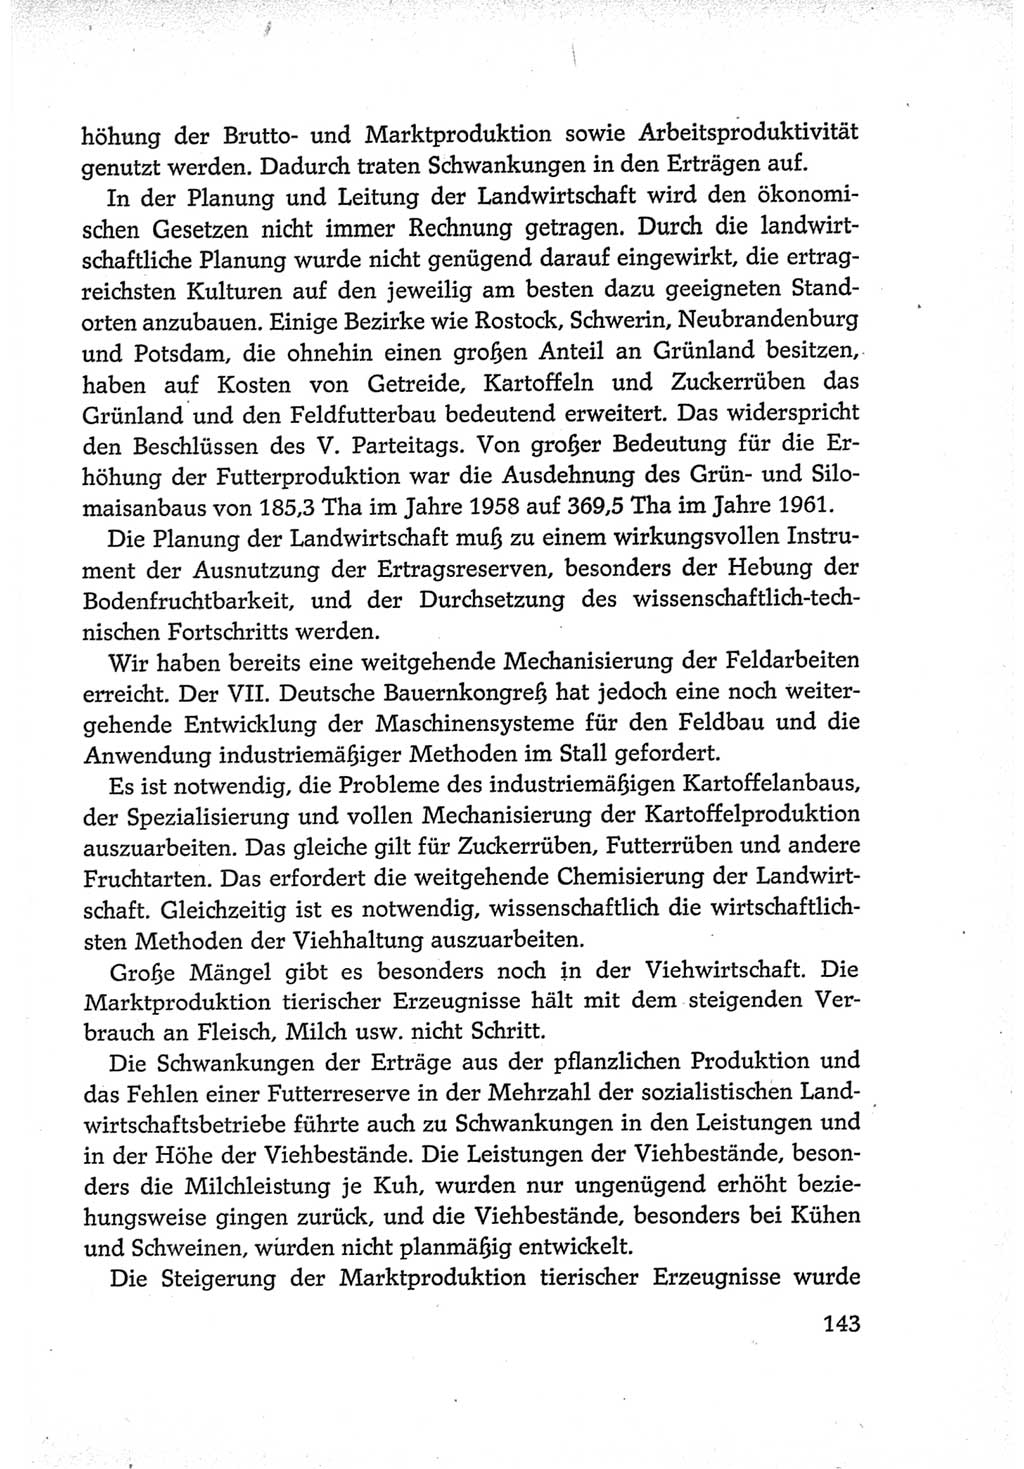 Protokoll der Verhandlungen des Ⅵ. Parteitages der Sozialistischen Einheitspartei Deutschlands (SED) [Deutsche Demokratische Republik (DDR)] 1963, Band Ⅳ, Seite 143 (Prot. Verh. Ⅵ. PT SED DDR 1963, Bd. Ⅳ, S. 143)